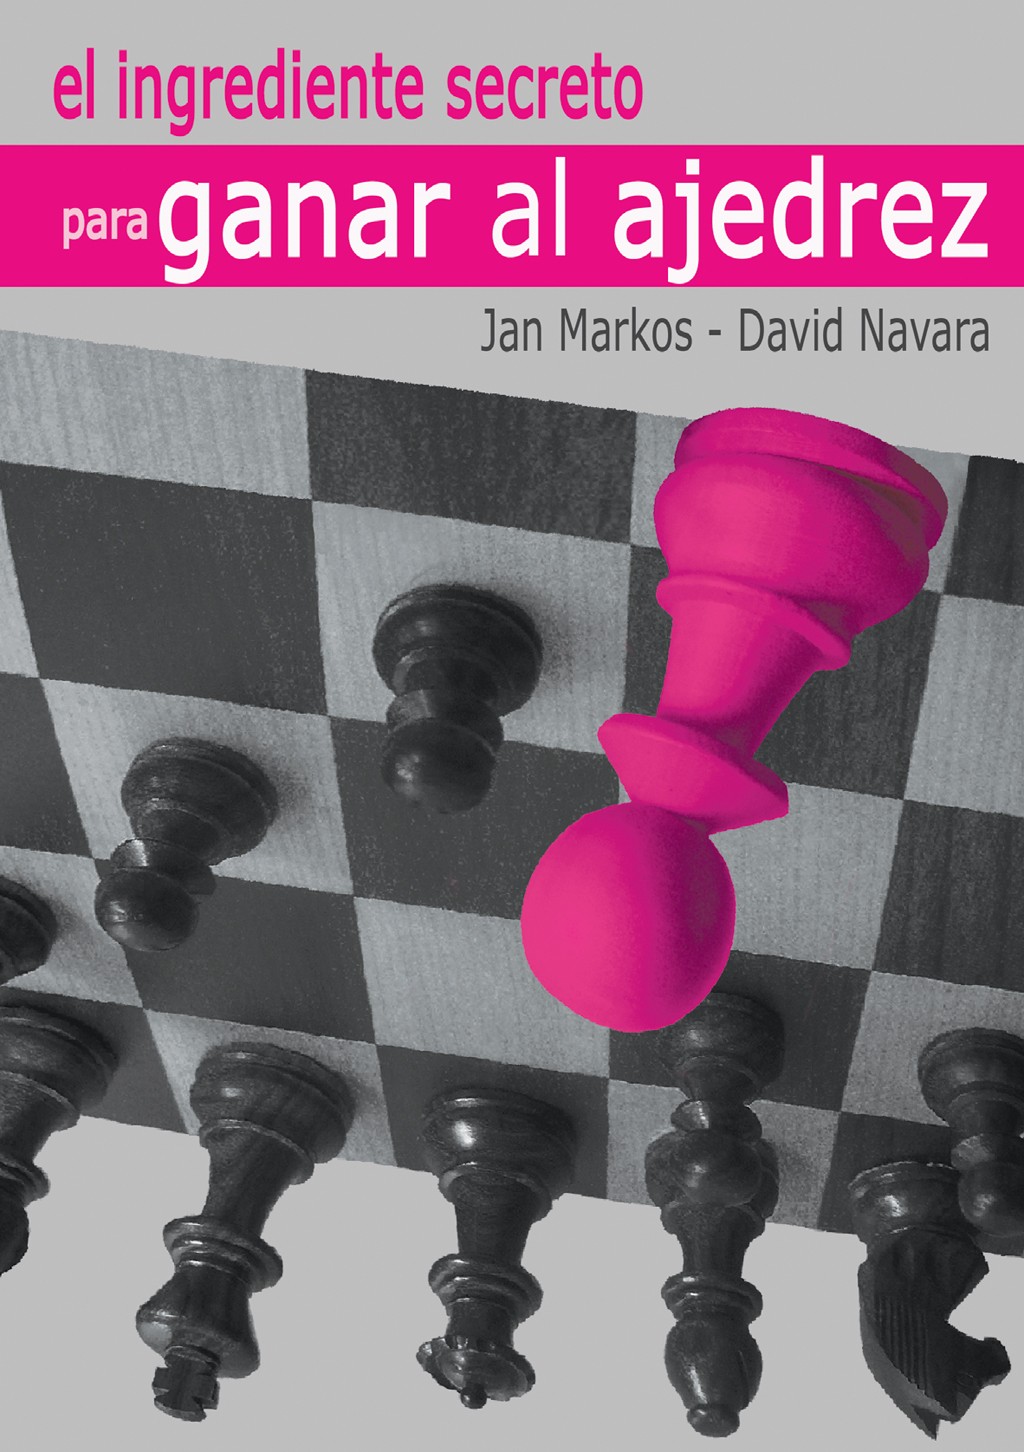 Ataque fegatello #ajedrecista #chess #chessplayer #profestiktok #ajedr